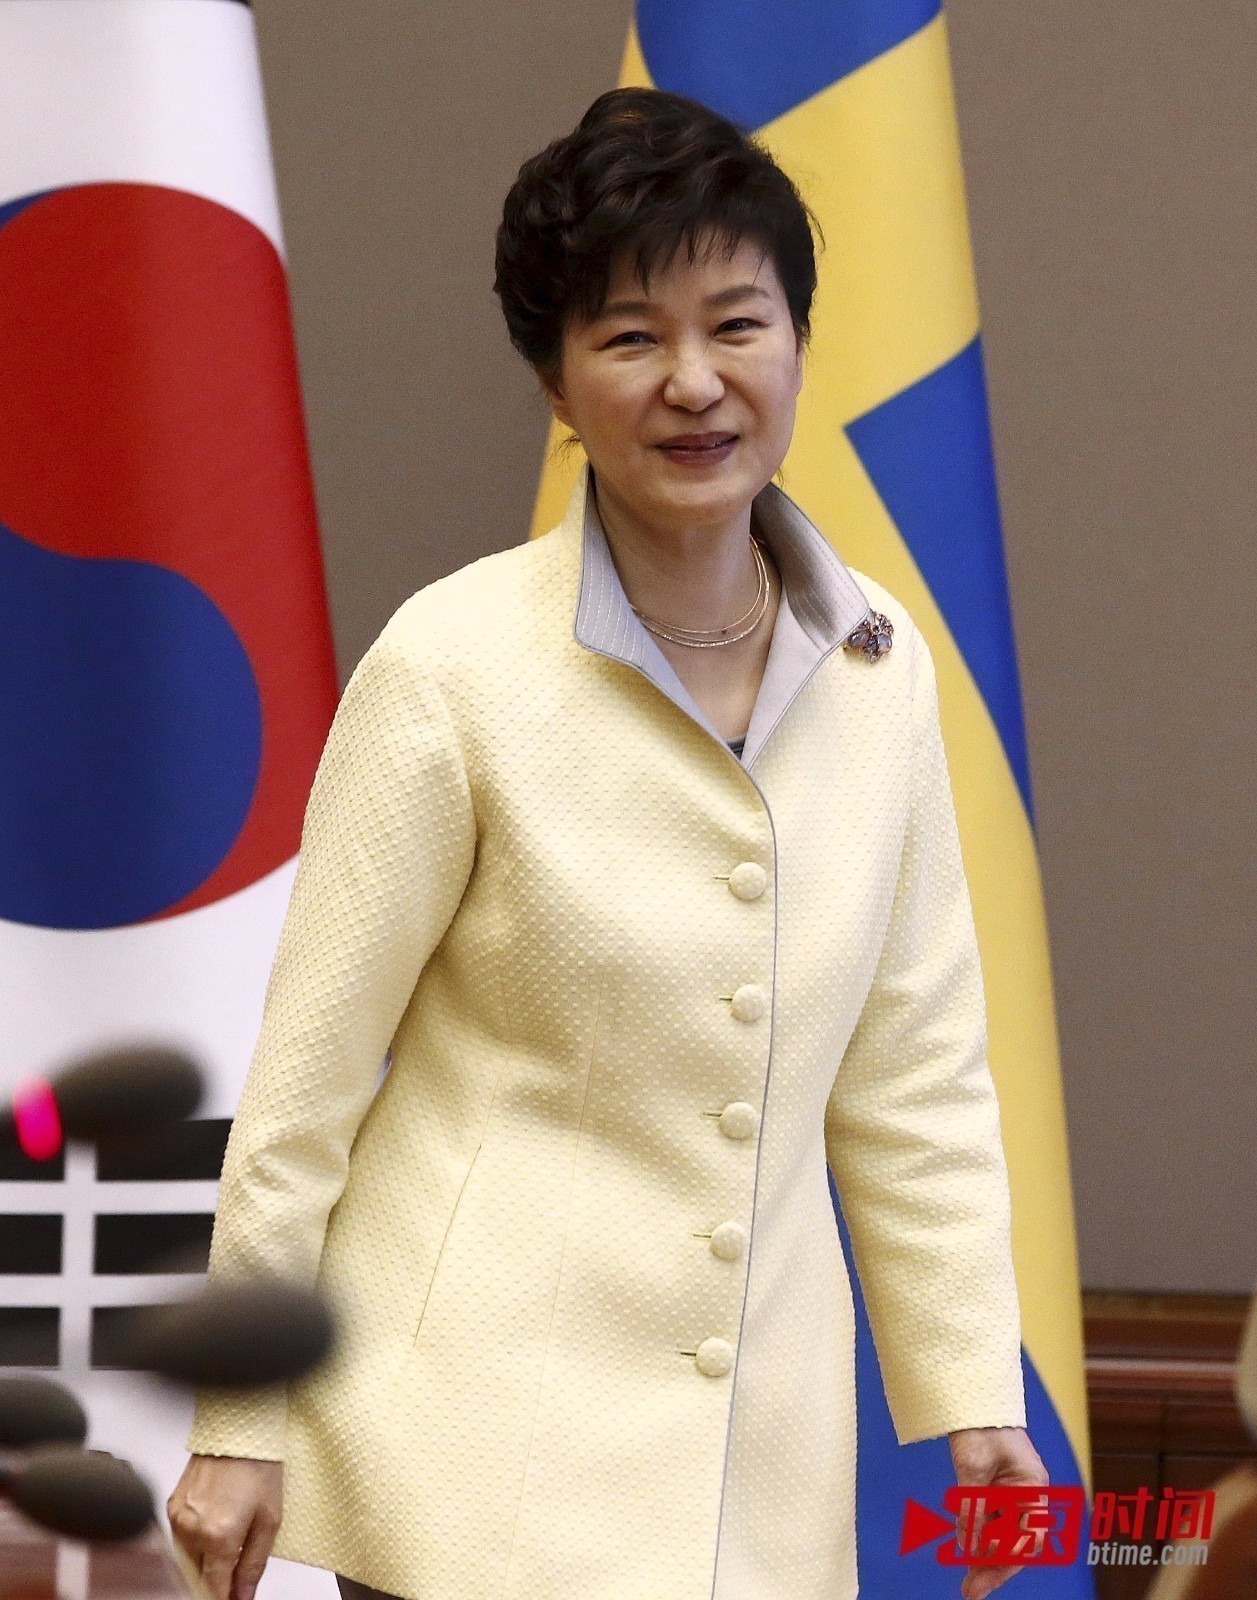 朴槿惠(第18屆韓國總統):人物生平,早年經歷,經受磨練,從政經歷,個人生活,家庭_中文百科全書